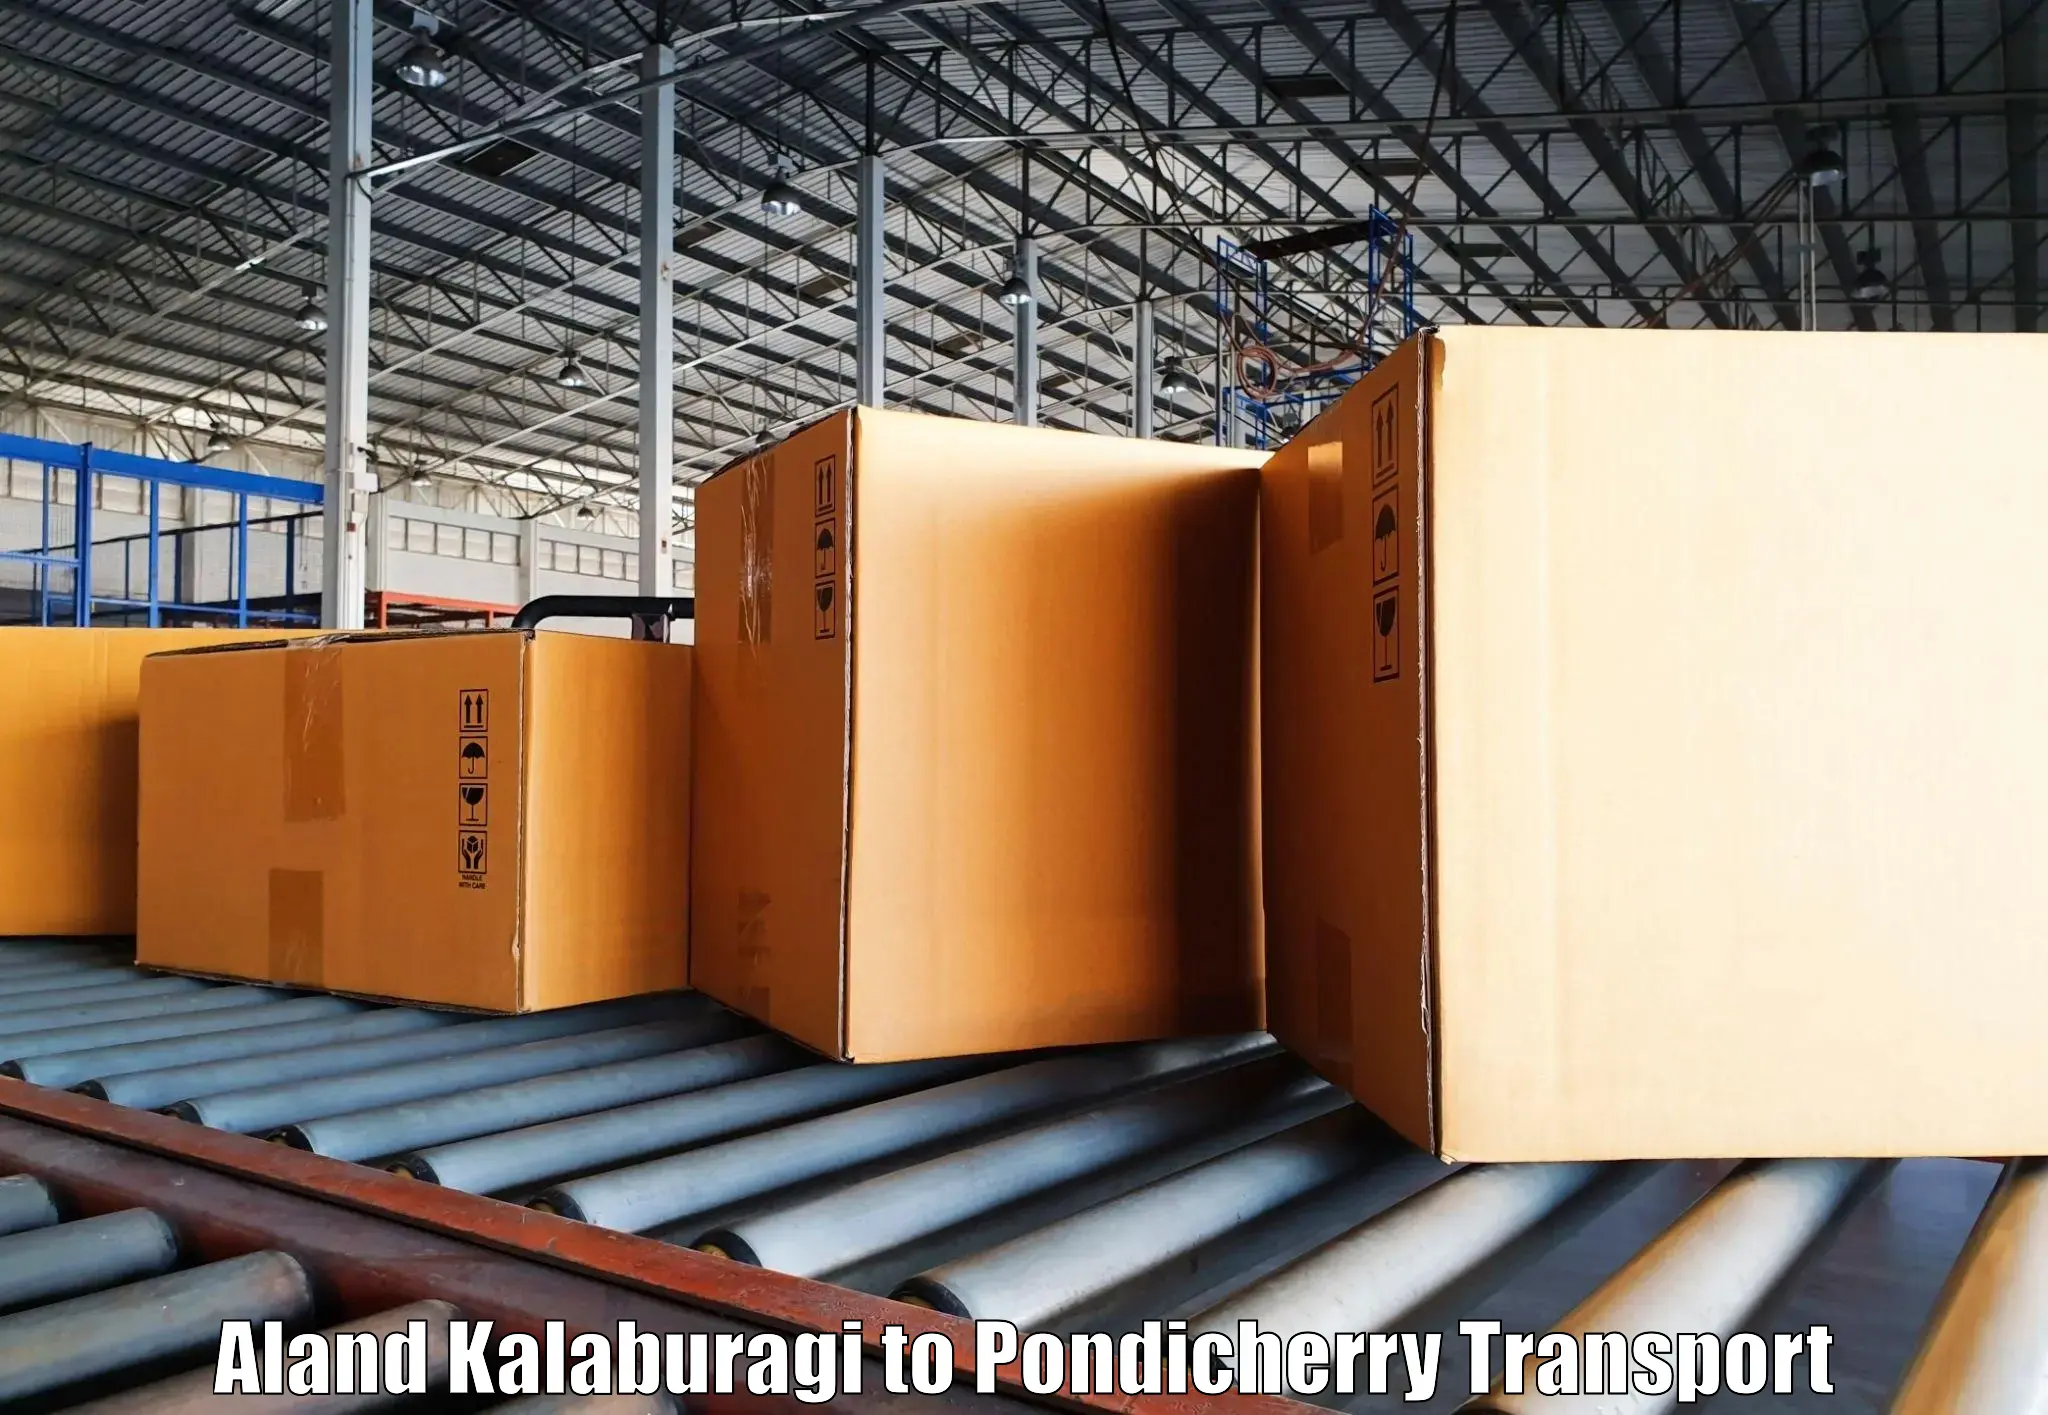 Commercial transport service Aland Kalaburagi to Karaikal